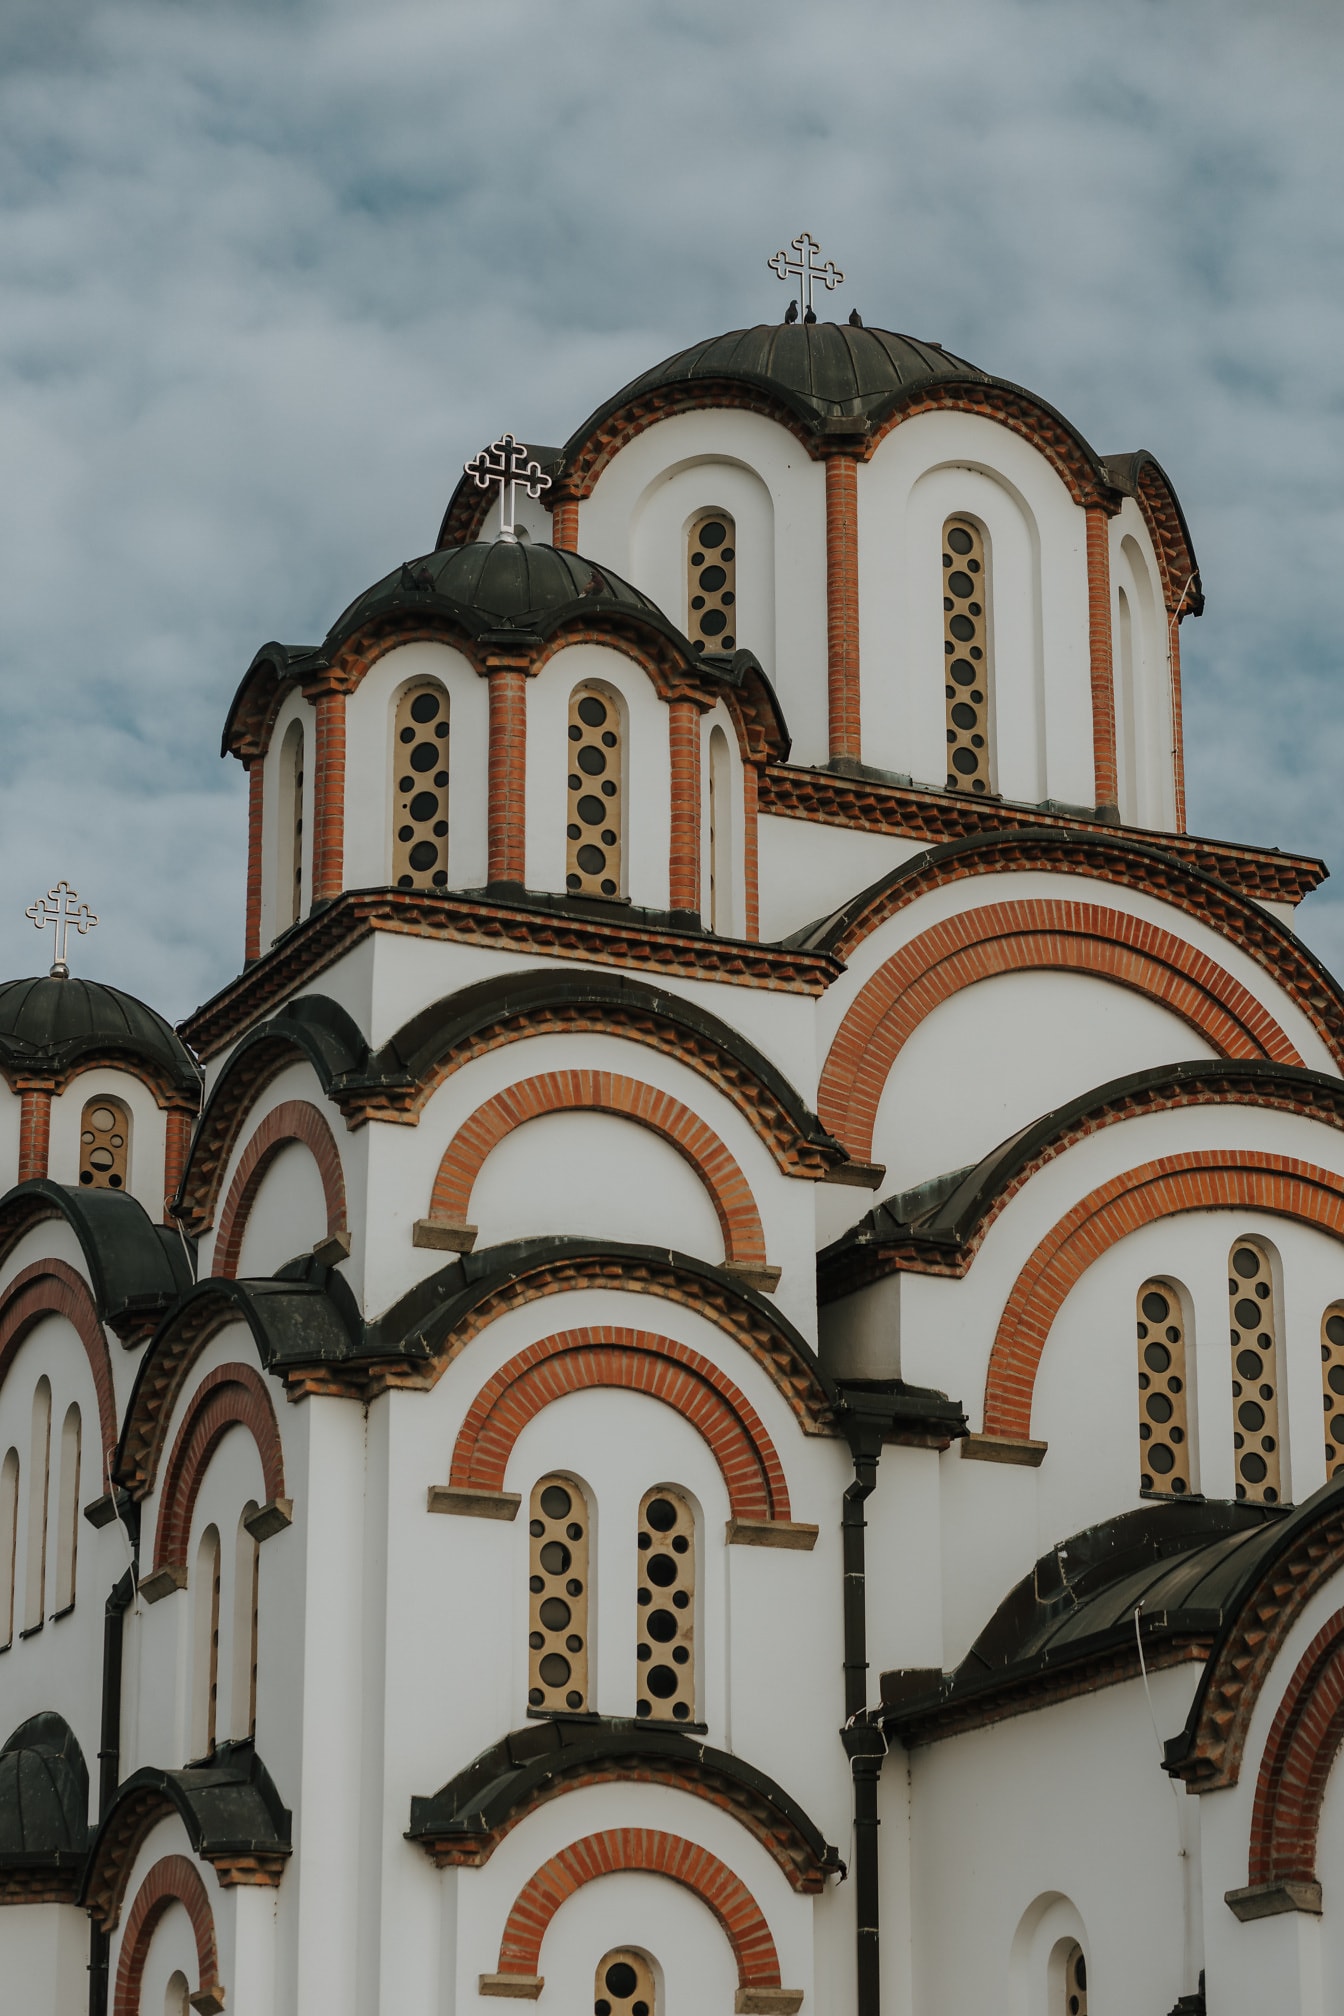 Μεγαλοπρεπής ορθόδοξη ρωσική εκκλησία σε μεσαιωνικό βυζαντινό αρχιτεκτονικό στυλ